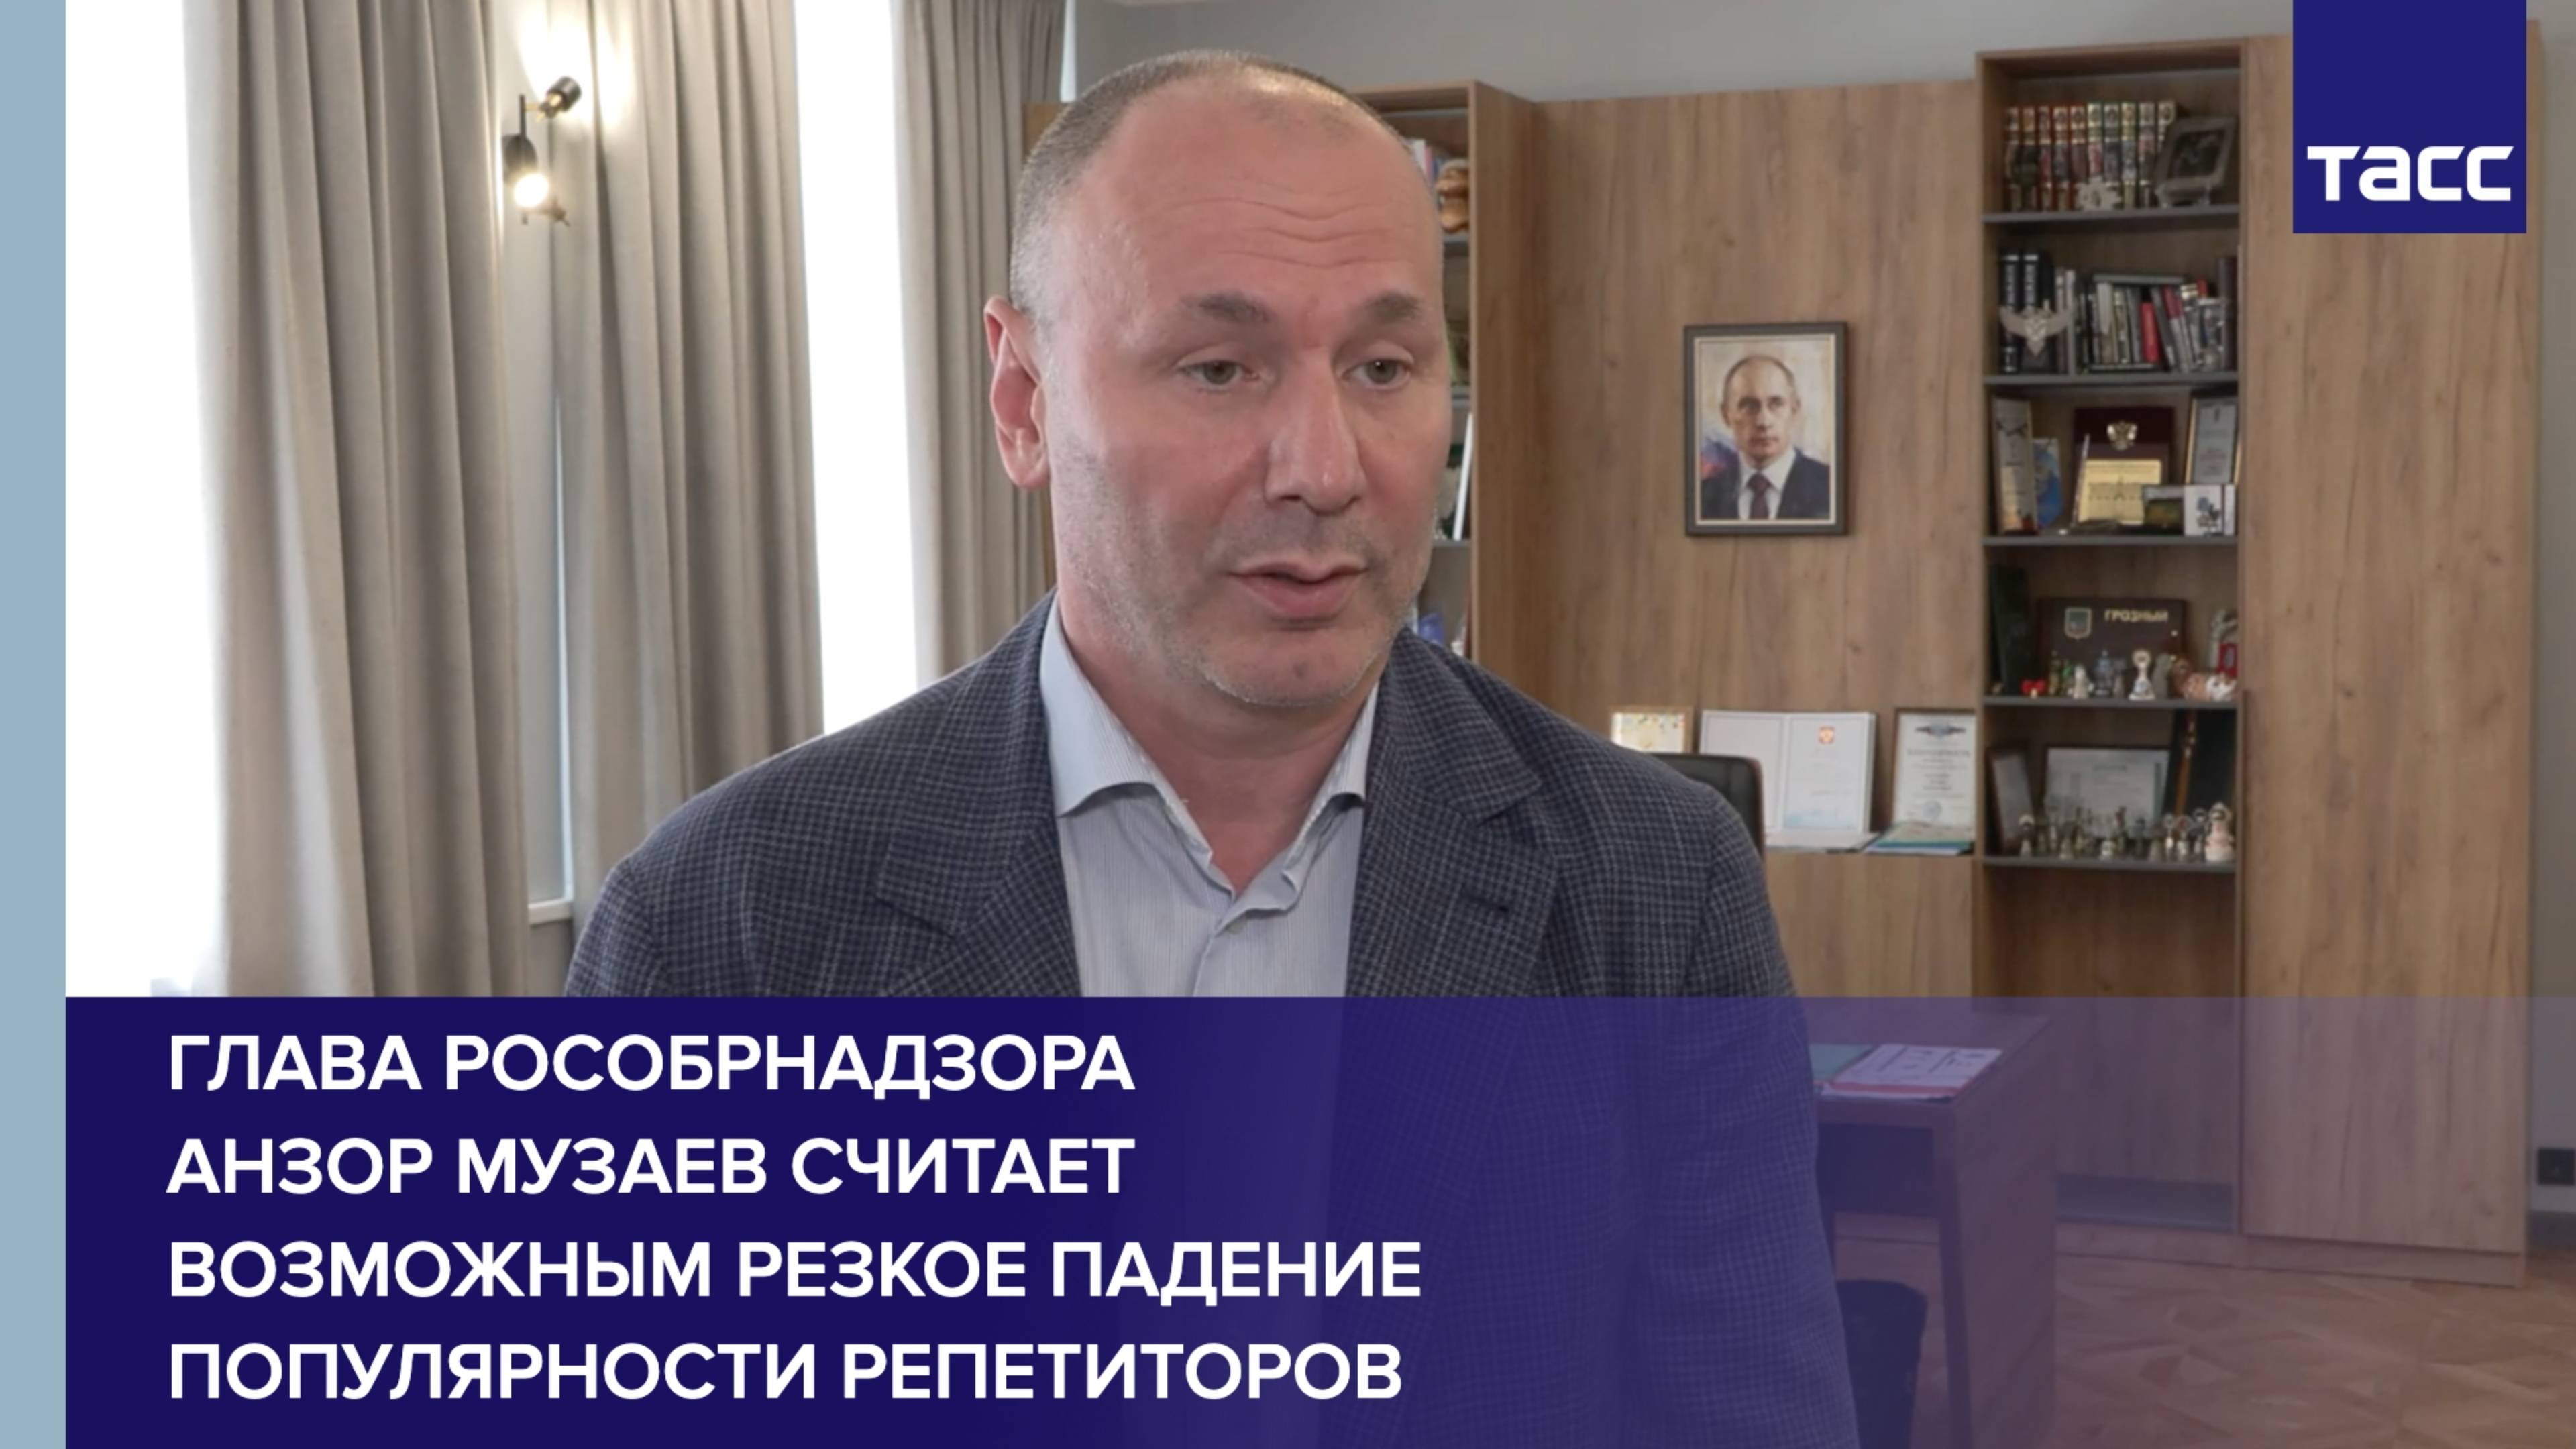 Глава Рособрнадзора Анзор Музаев считает возможным резкое падение популярности репетиторов